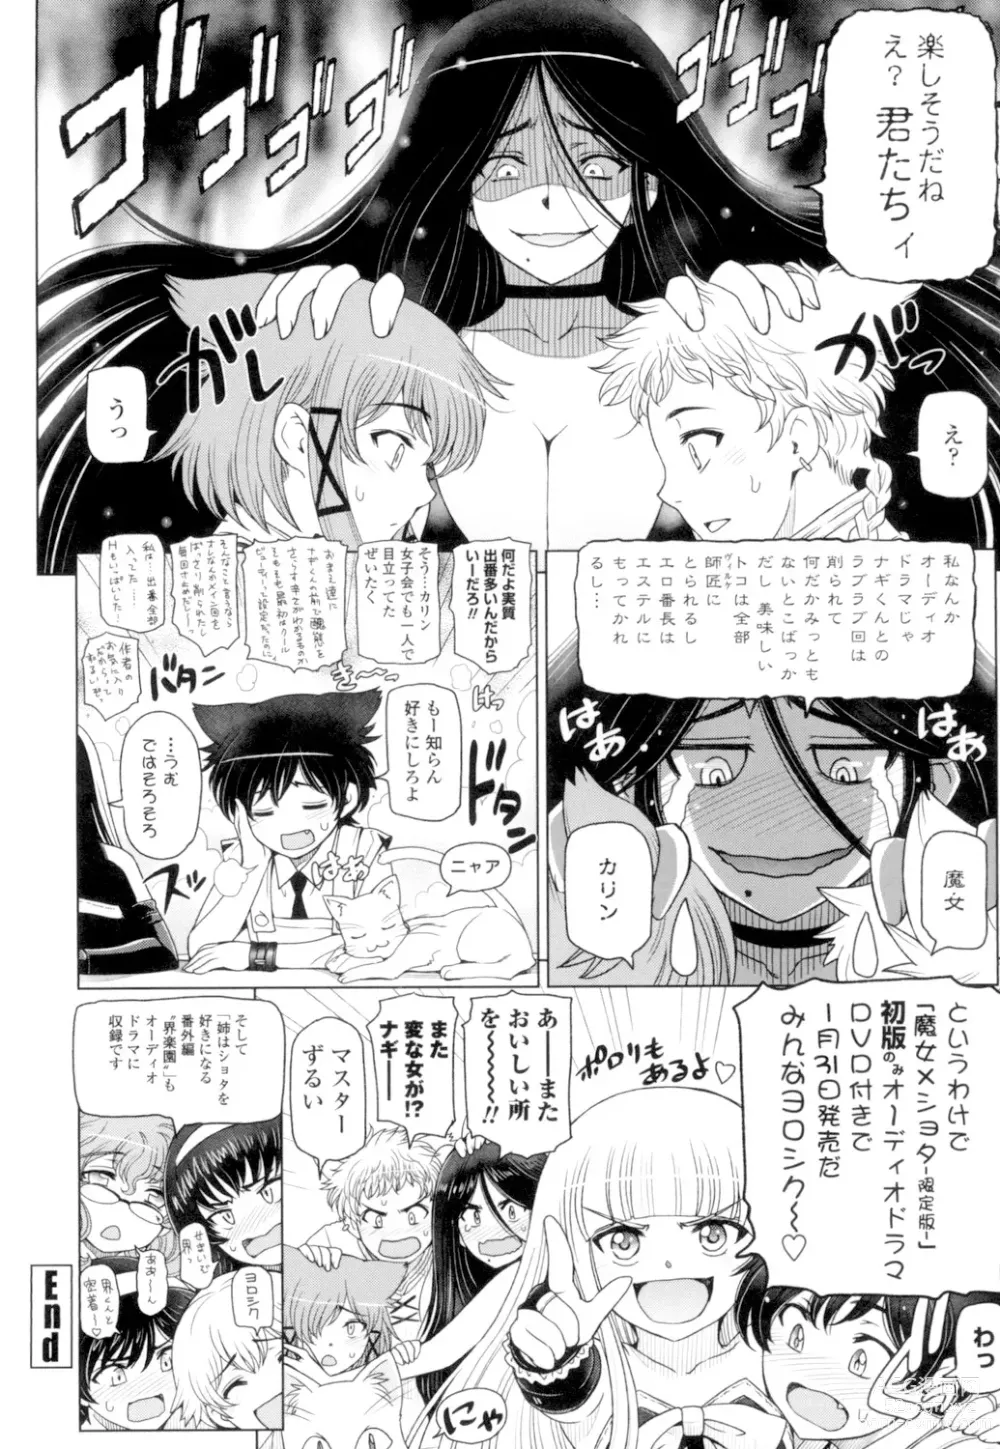 Page 210 of manga Natsu-jiru ~Ase ni Mamirete Gucchagucha~